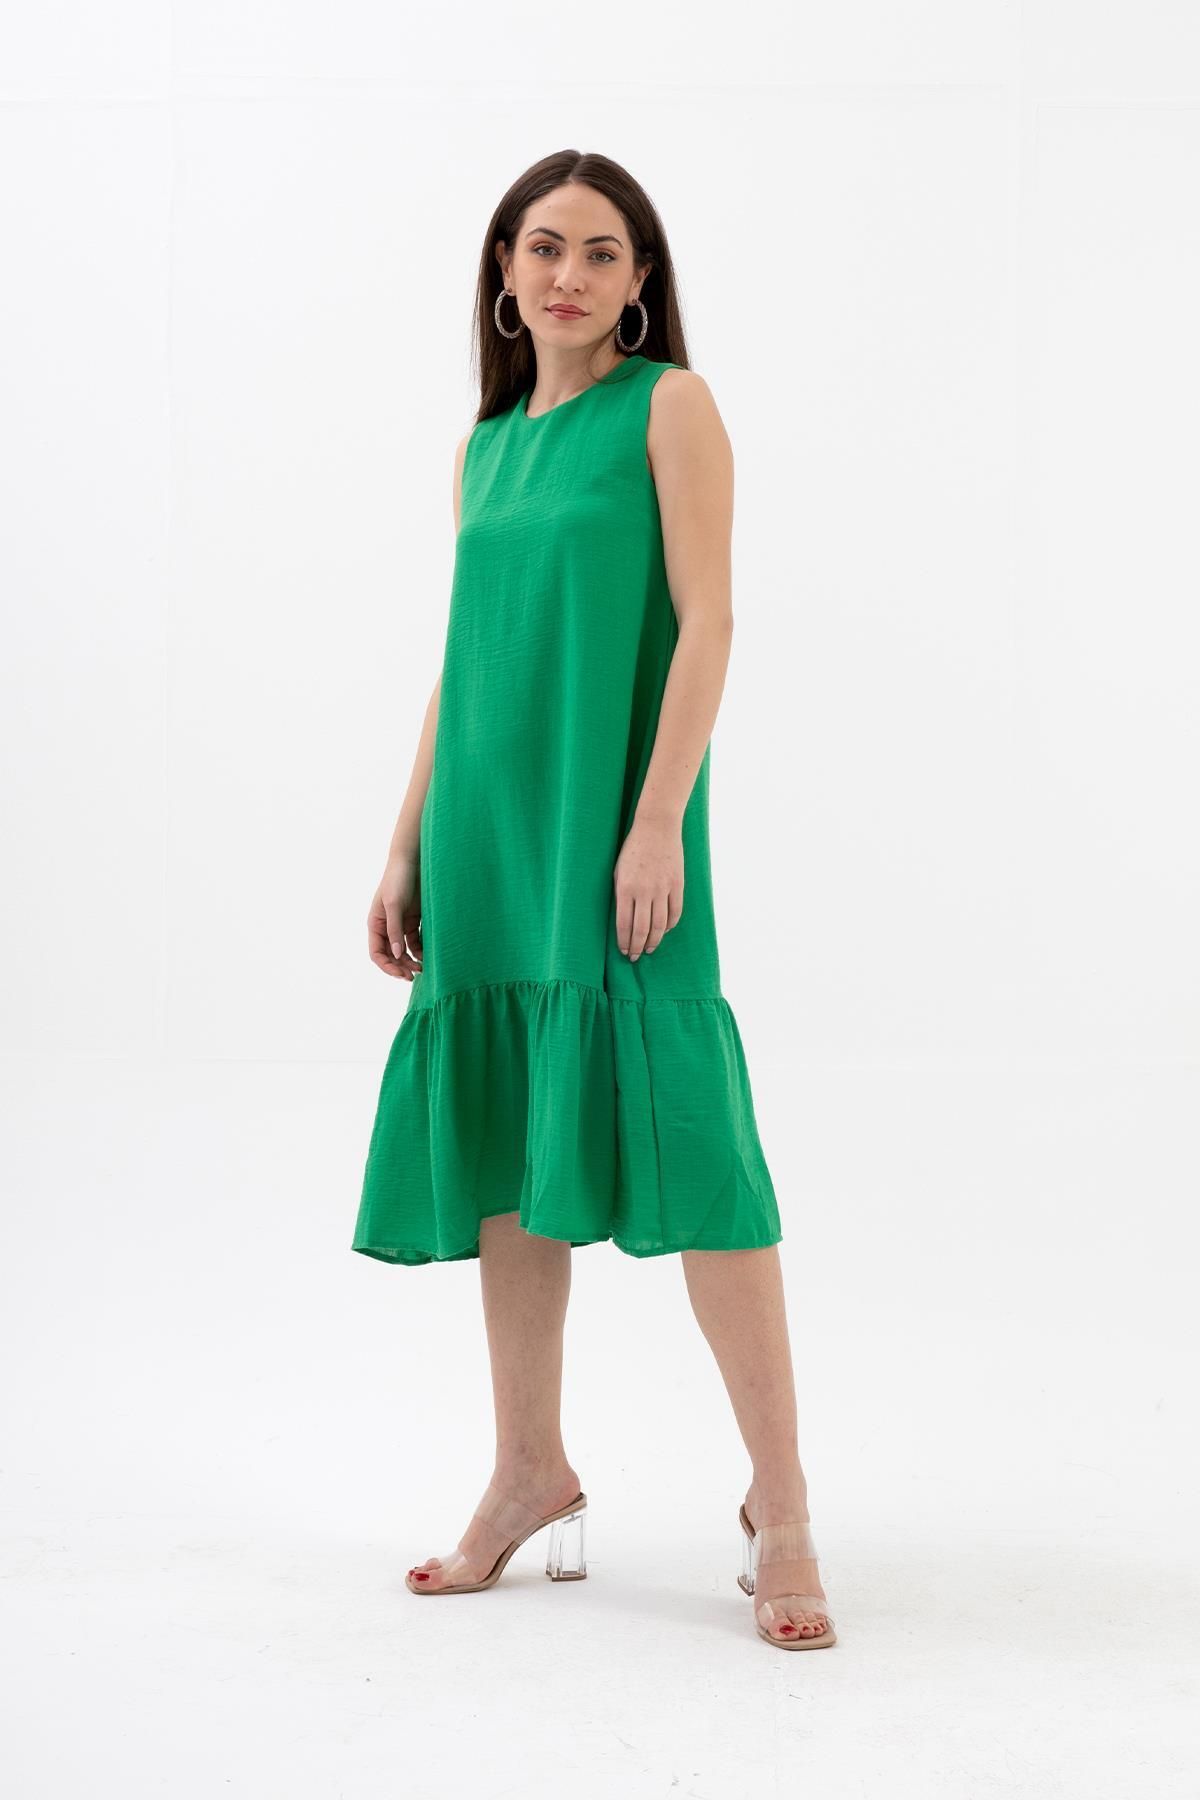 VAPUR TEKSTİL Kristal Keten Kolsuz Kadın Salaş Elbise - Yeşil